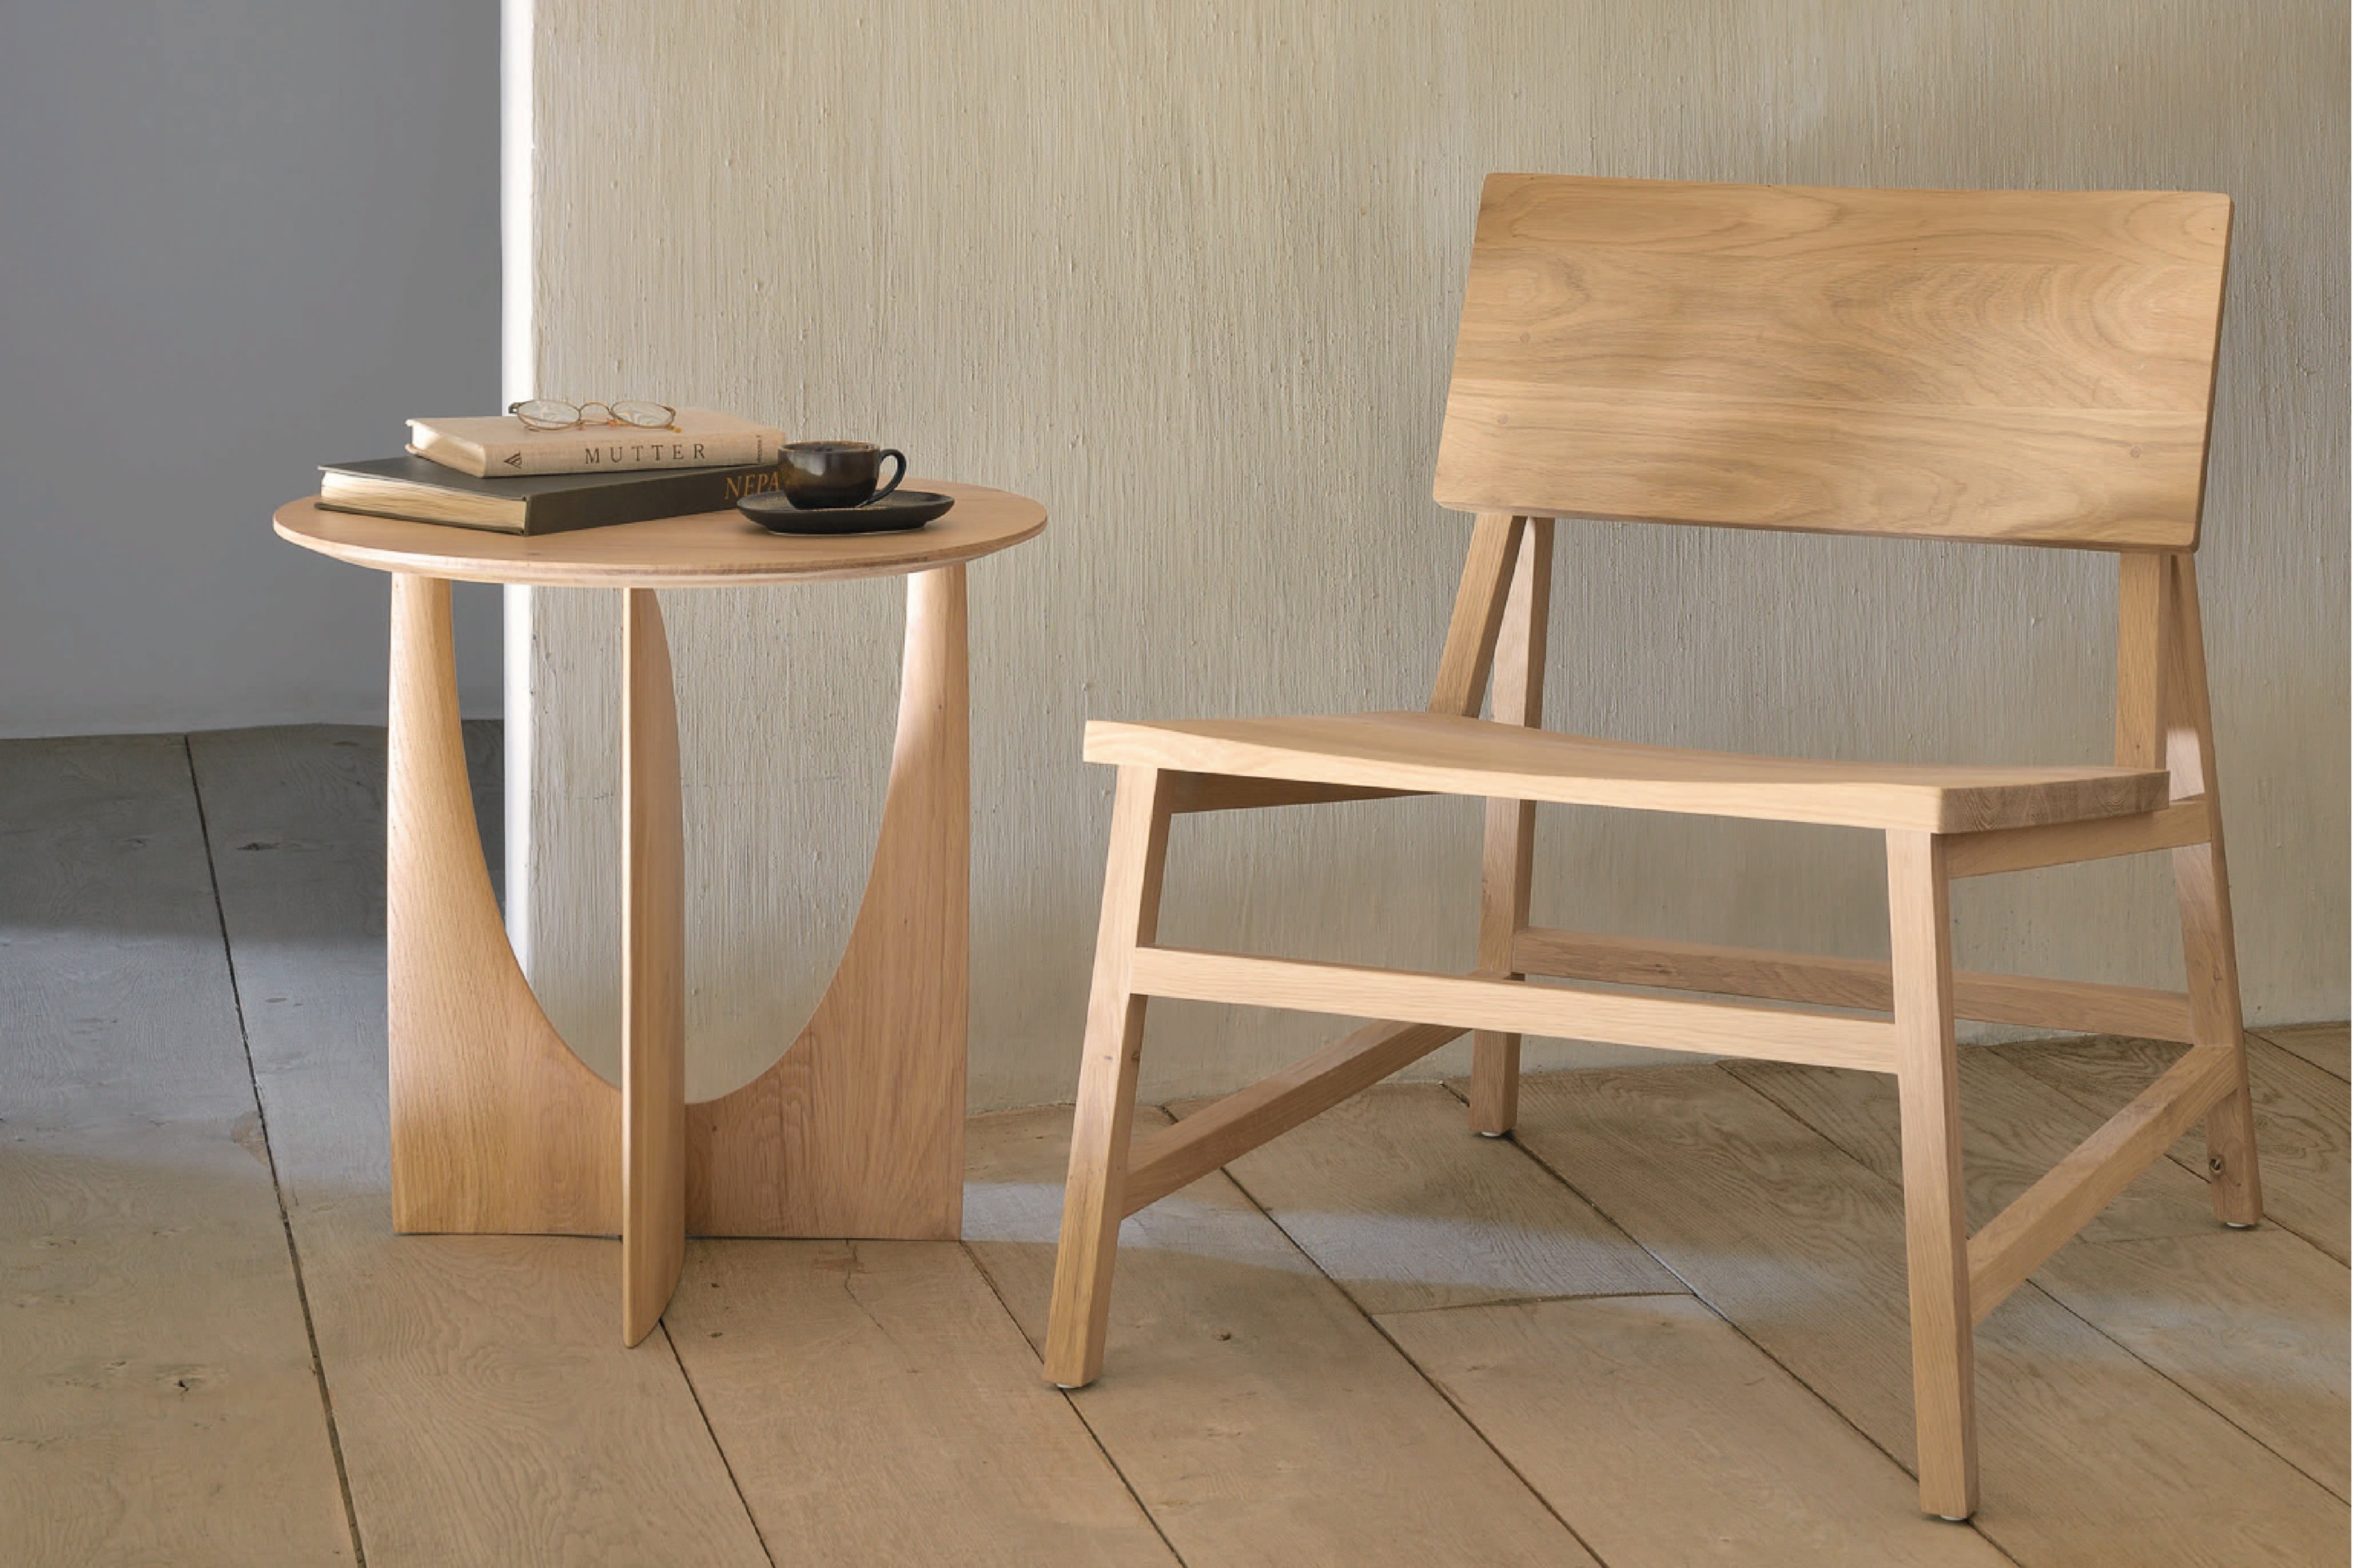 比利時原裝進口實木傢俬 - 座椅系列 - N2系列橡木梳化椅